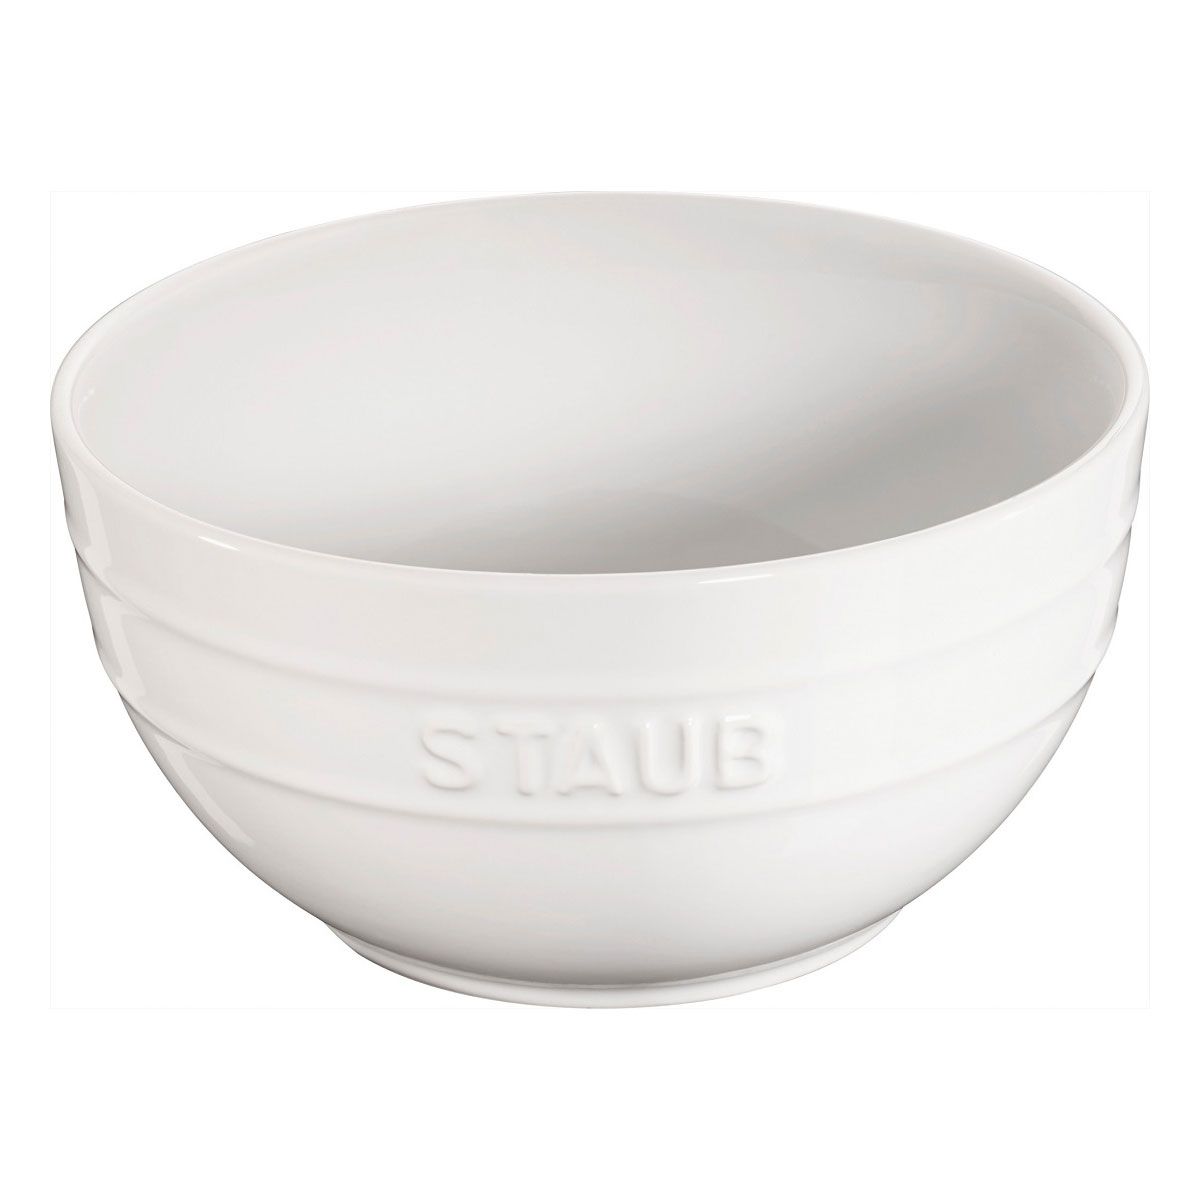 Bowl Em Cerâmica Staub 17 cm Branco